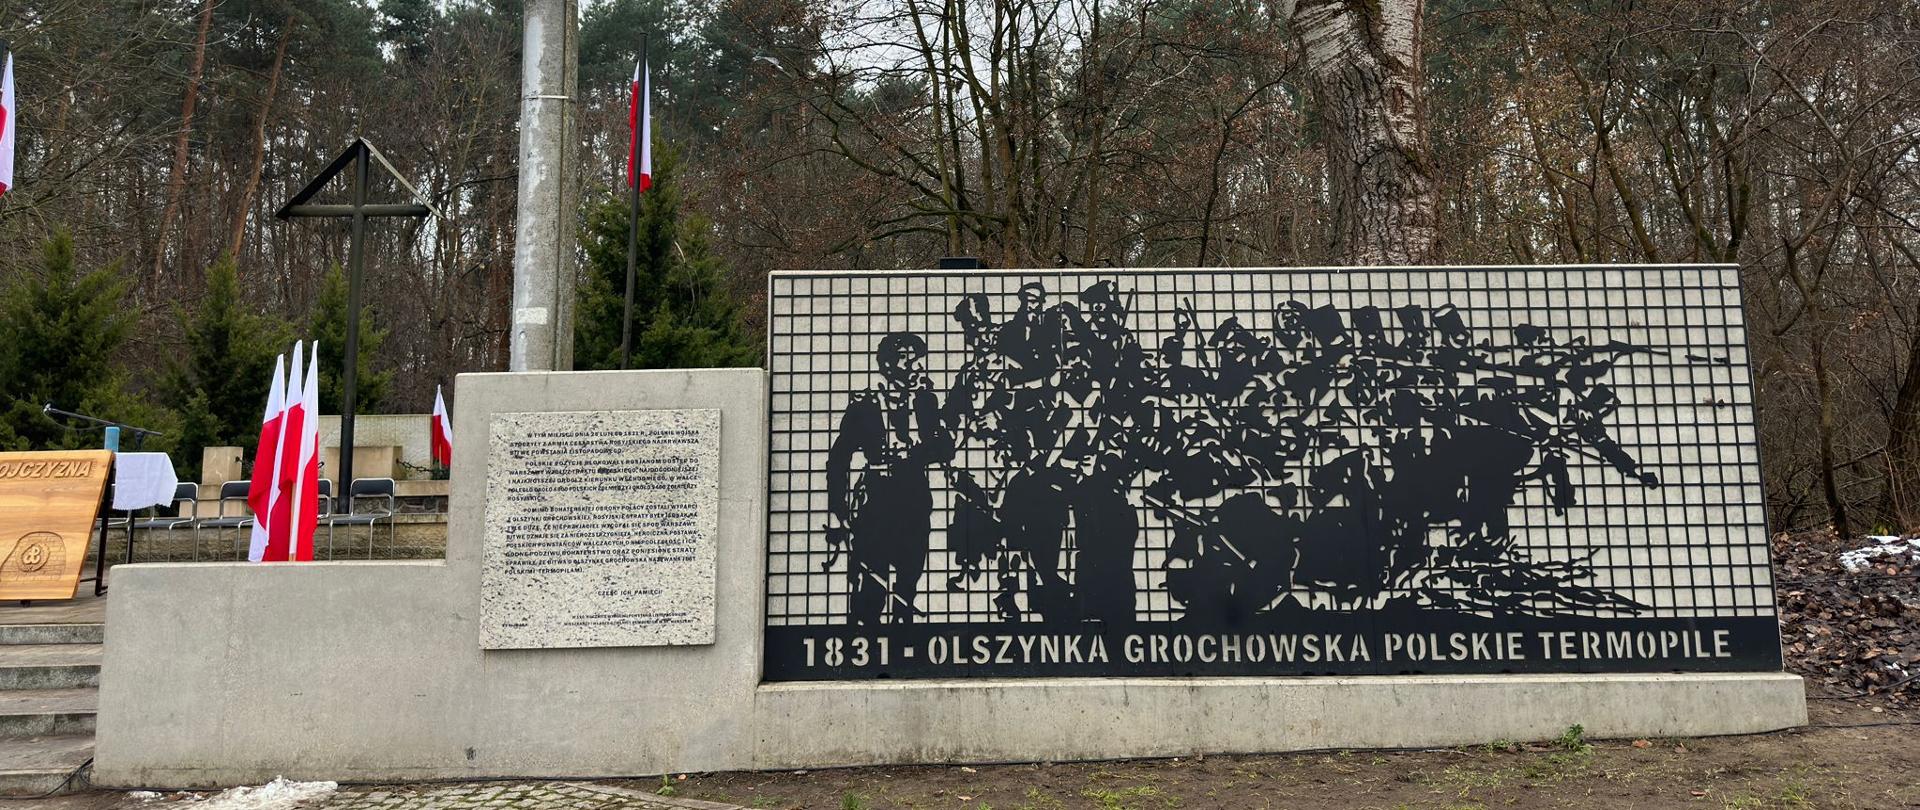 Na zdjęciu widoczny pomnik z napisem "1831- Olszynka Grochowska Polskie Termopile"